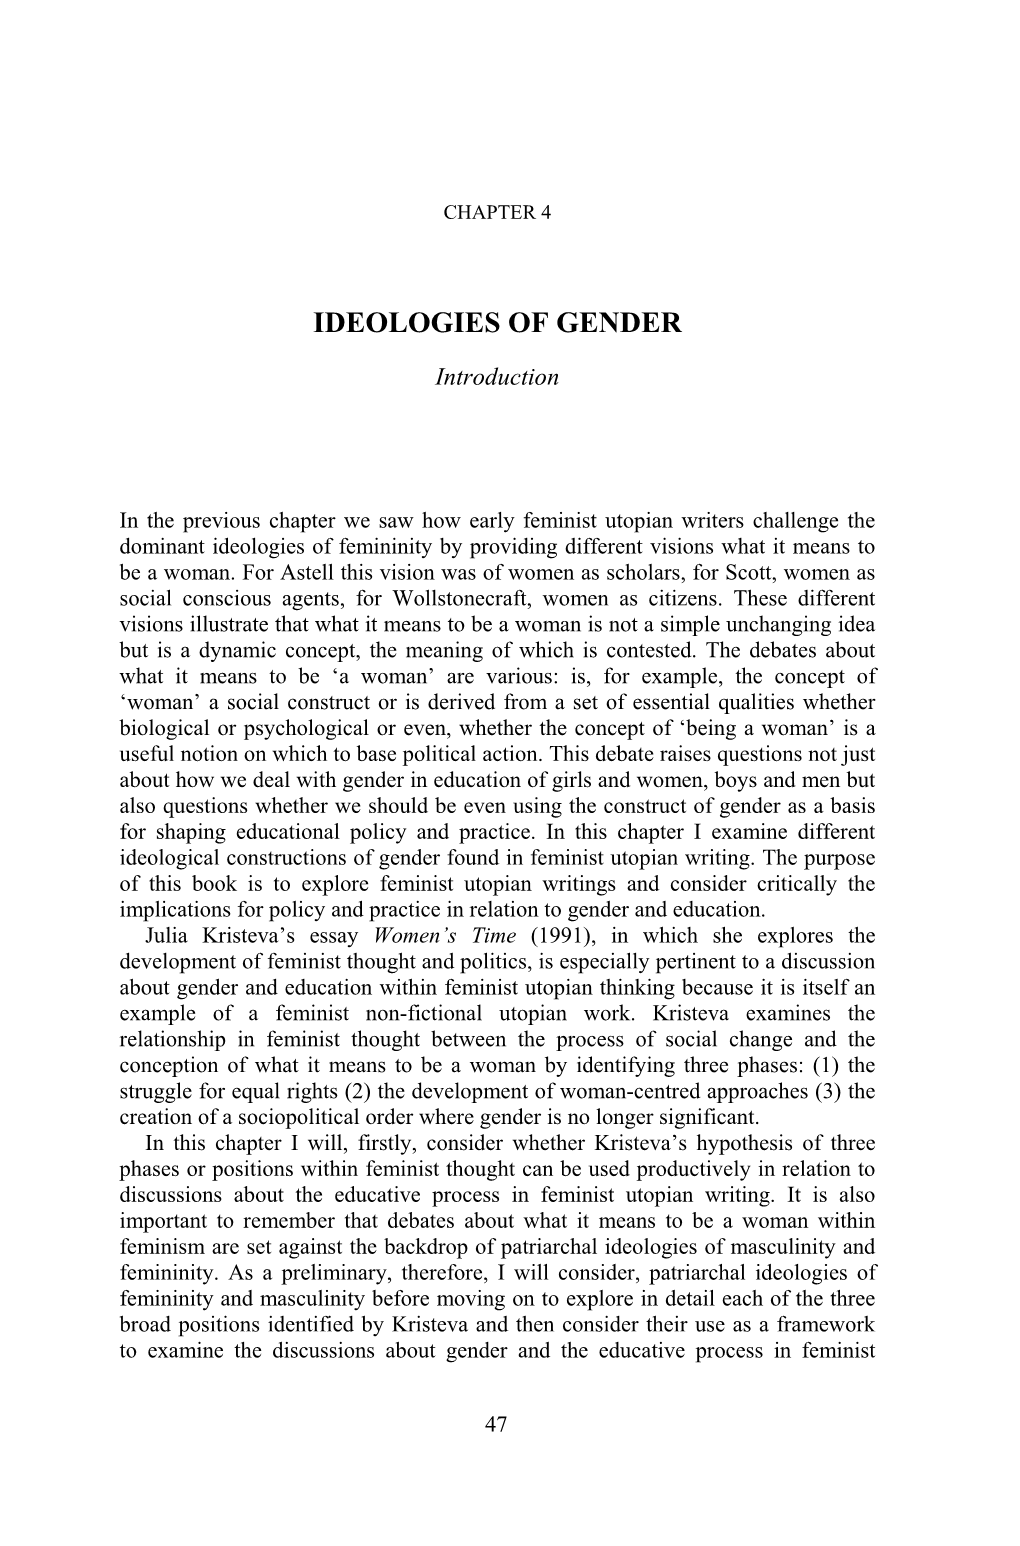 Ideologies of Gender